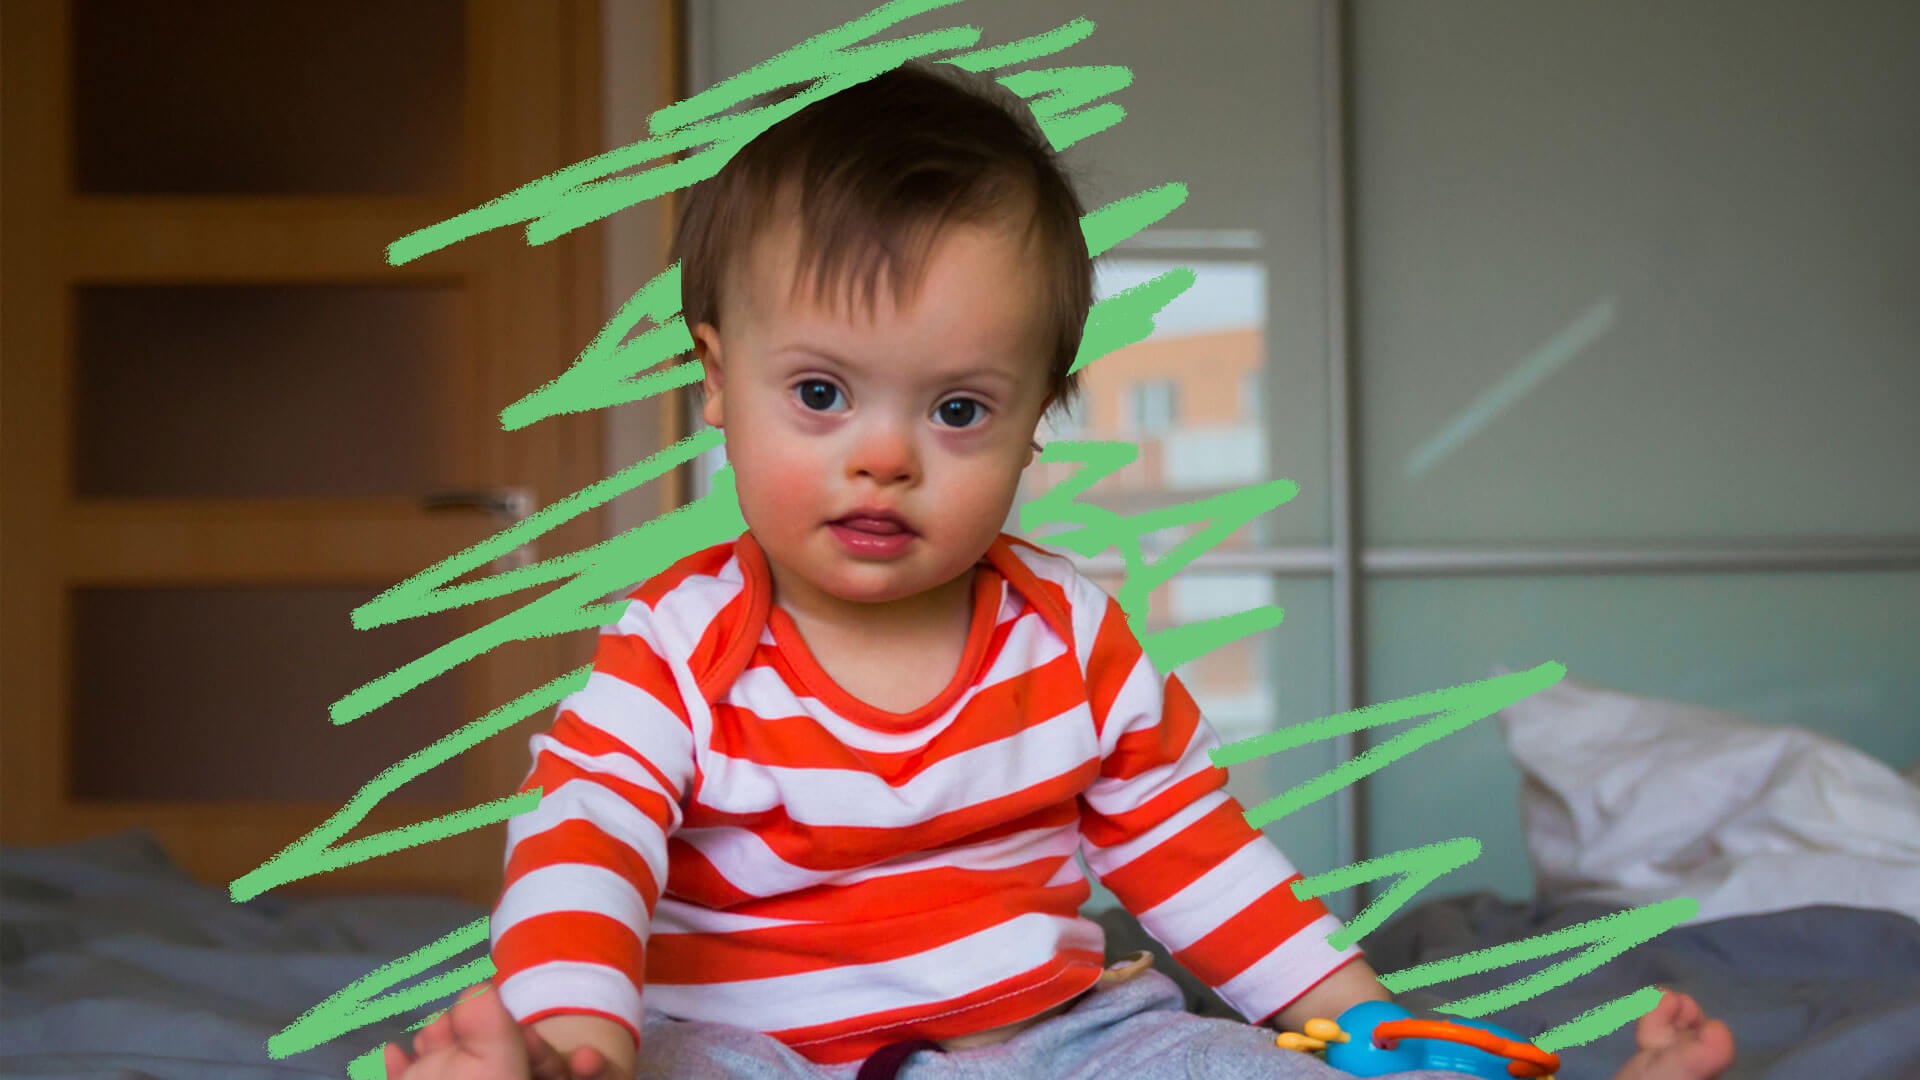 Filho com Síndrome de Down: foto de uma criança que está com blusa listrada branca e laranja.